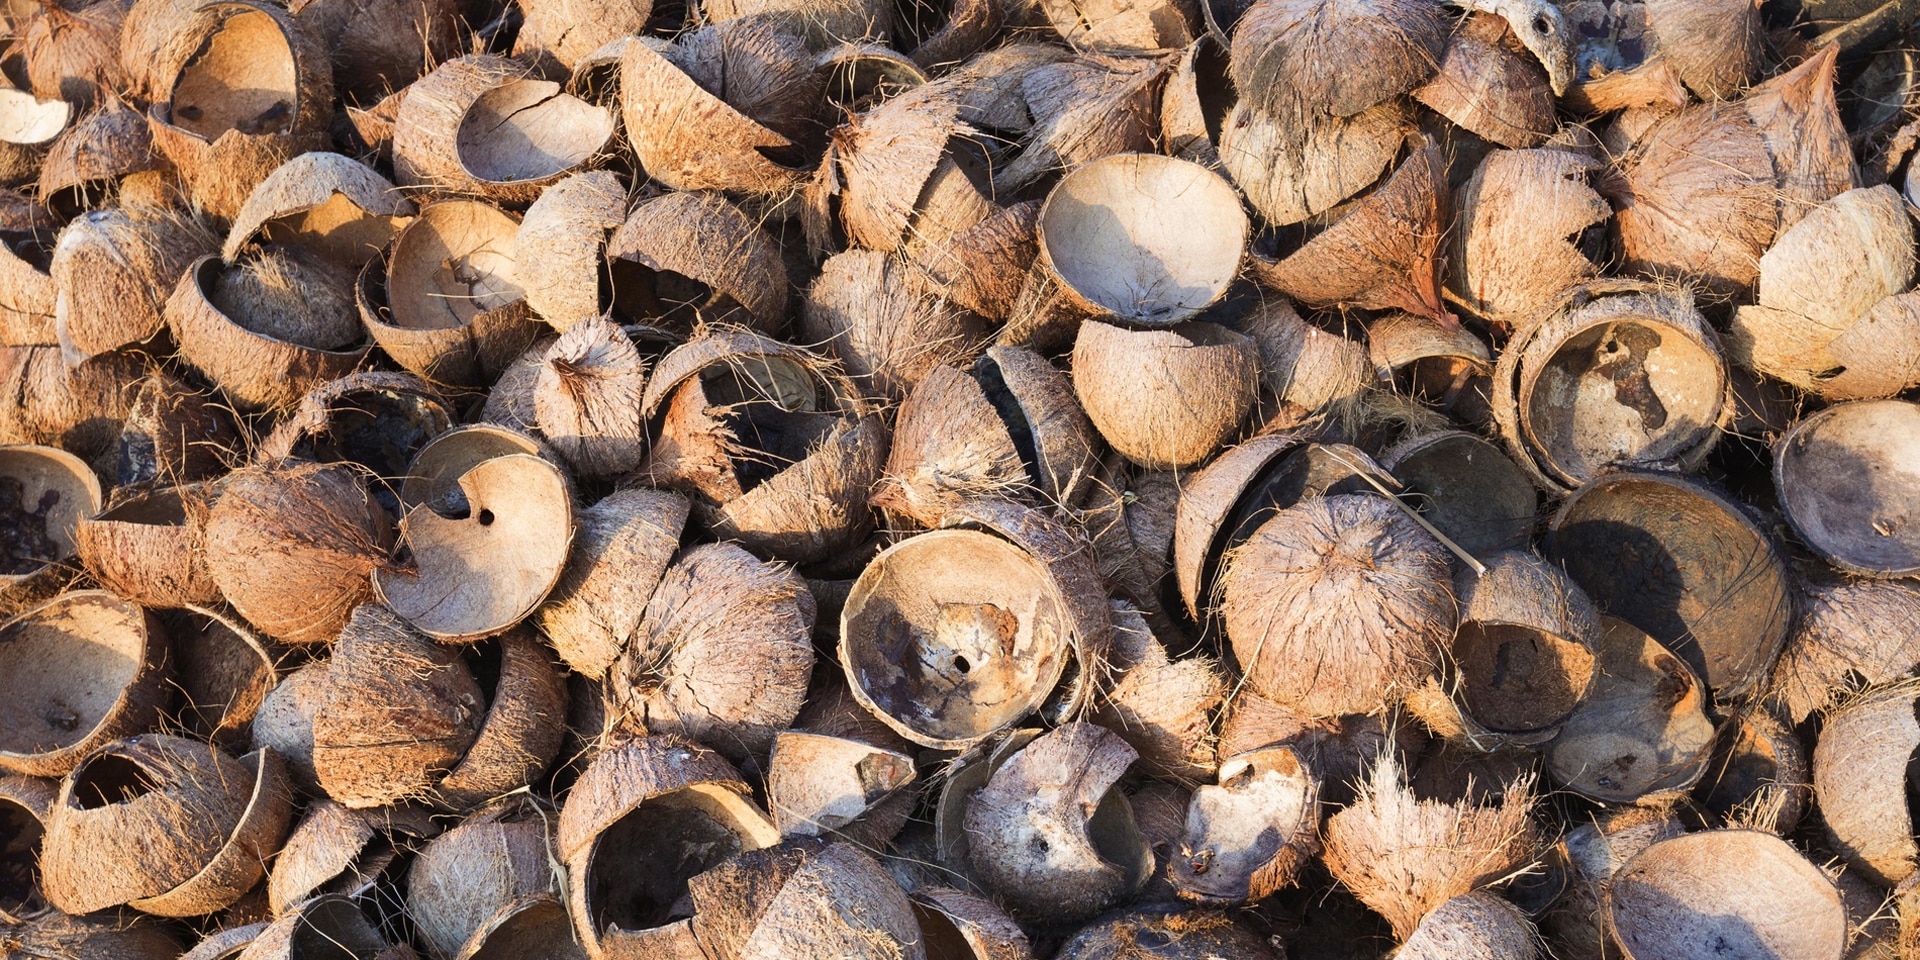 Des dizaines de coques vides de noix de coco jonchent le sol.